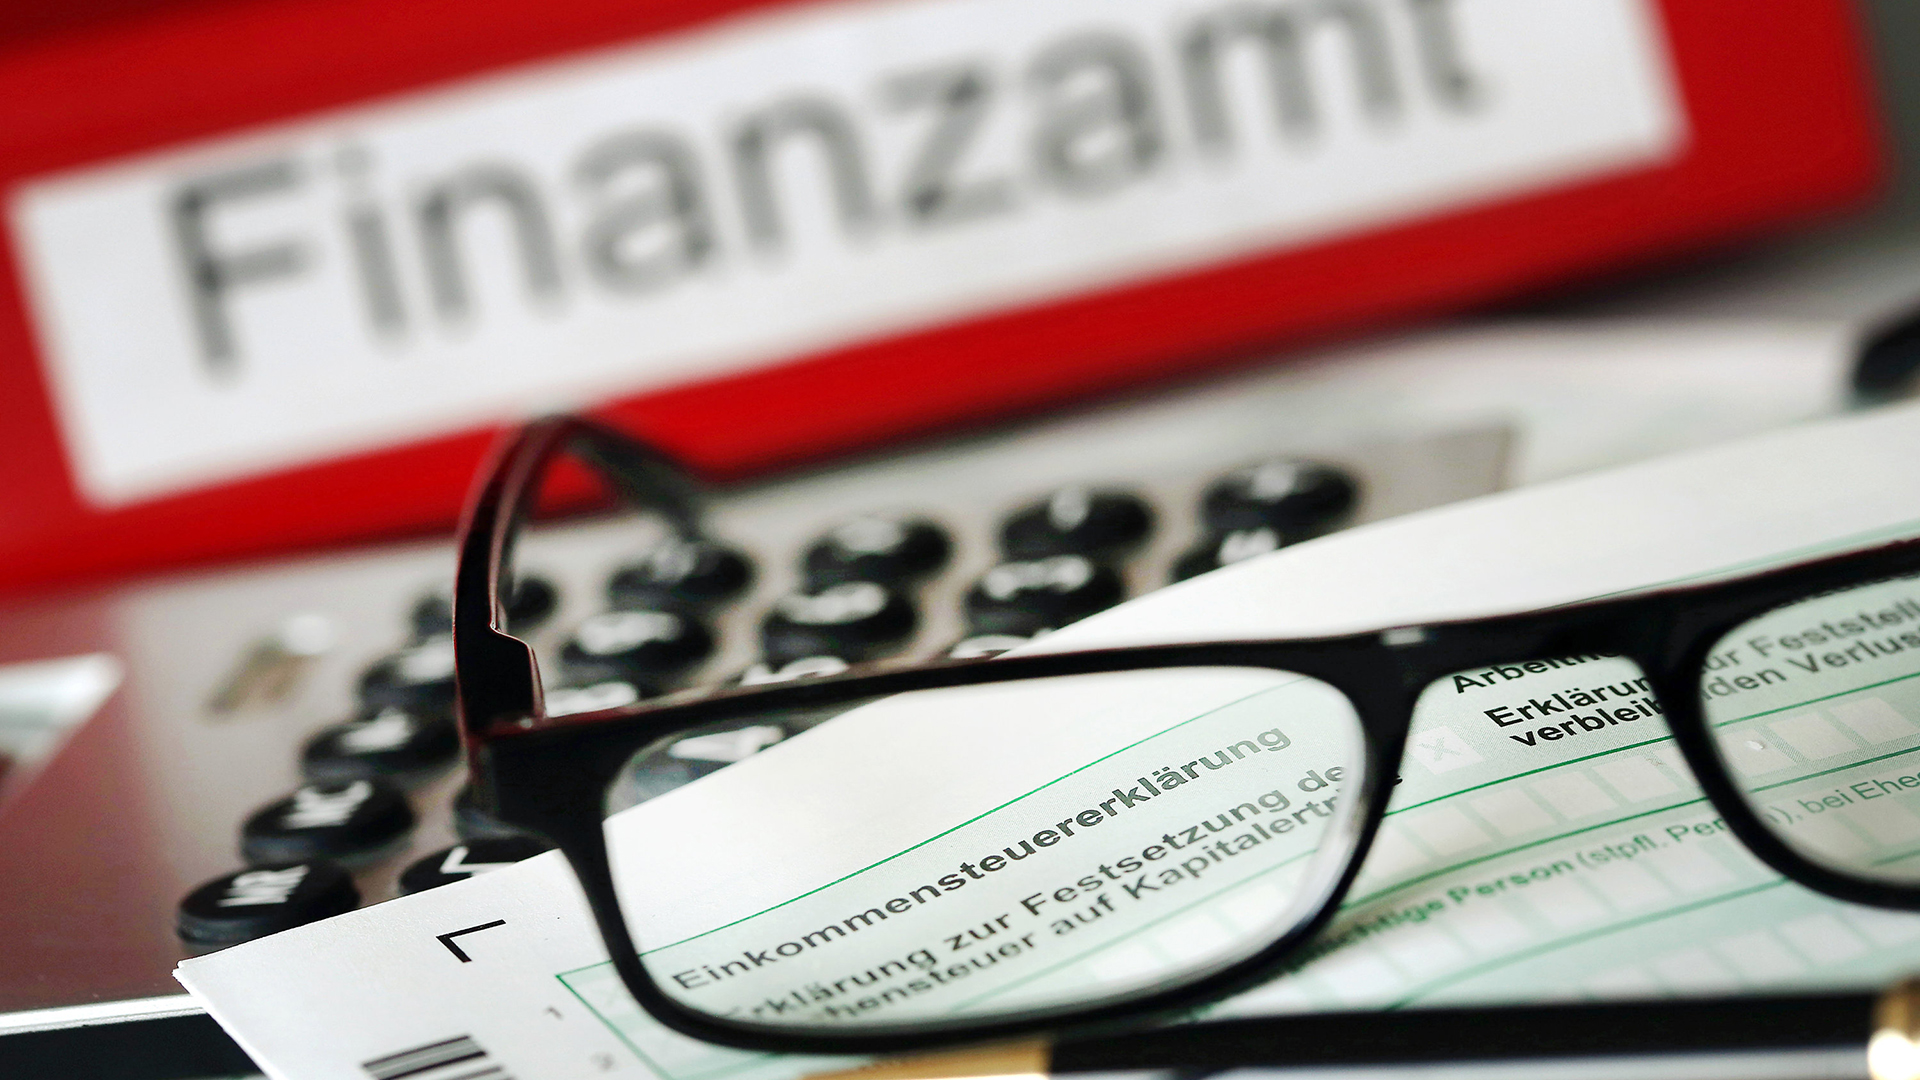 Auf einem Vordruck für die Steuererklärung liegt vor dem Aktenordner mit dem Aufdruck "Finanzamt" ein Stift und eine Brille.  | dpa